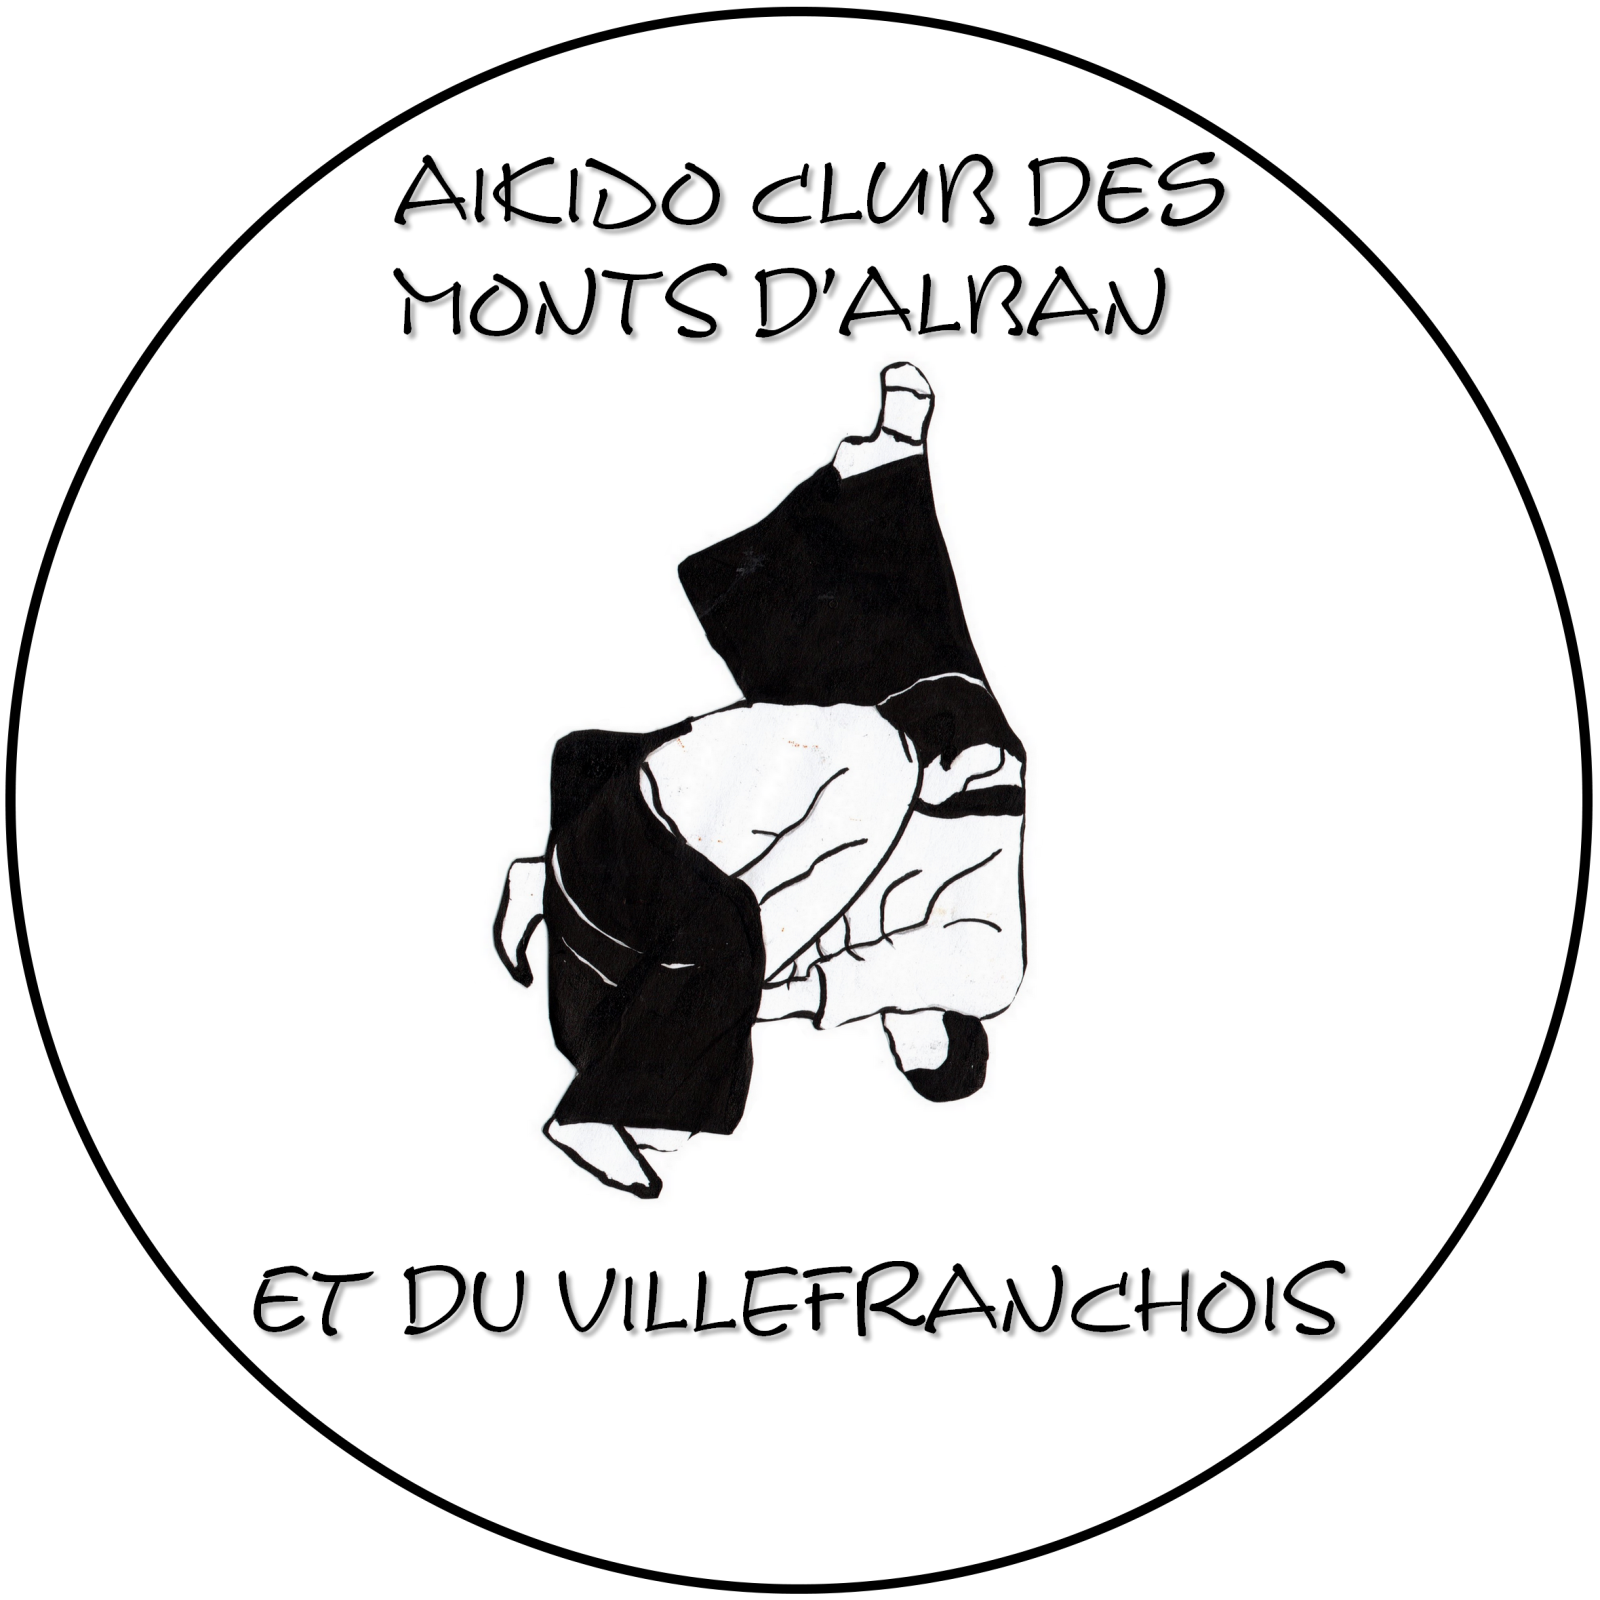 Aïkido club des Monts d